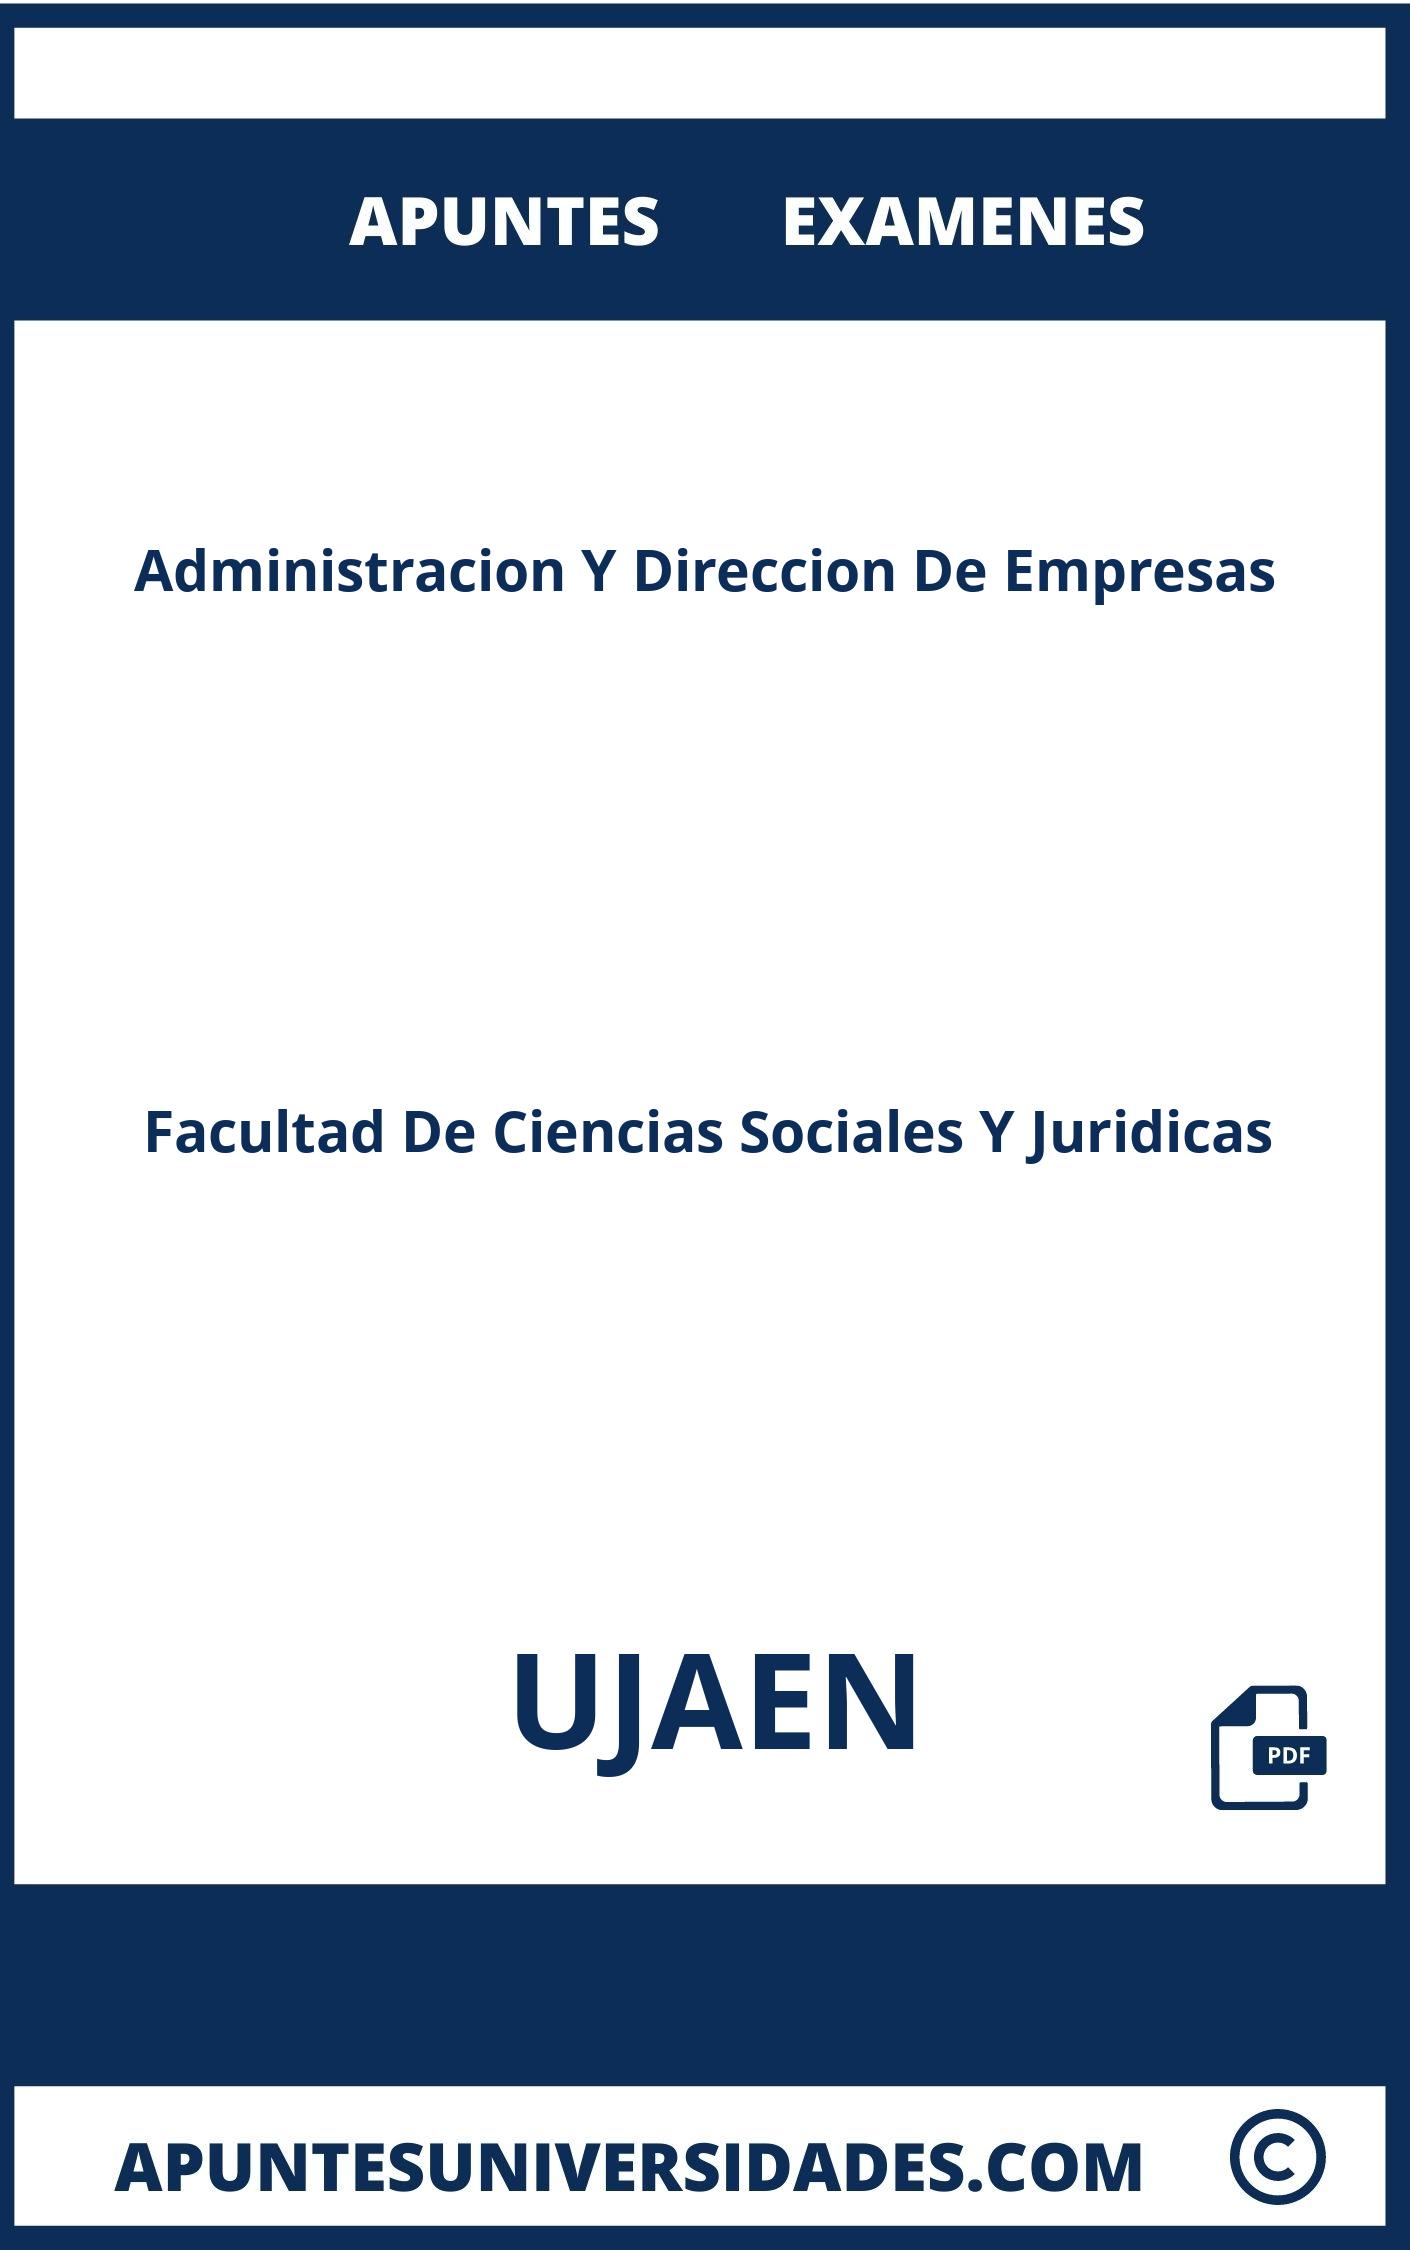 Apuntes y Examenes Administracion Y Direccion De Empresas UJAEN